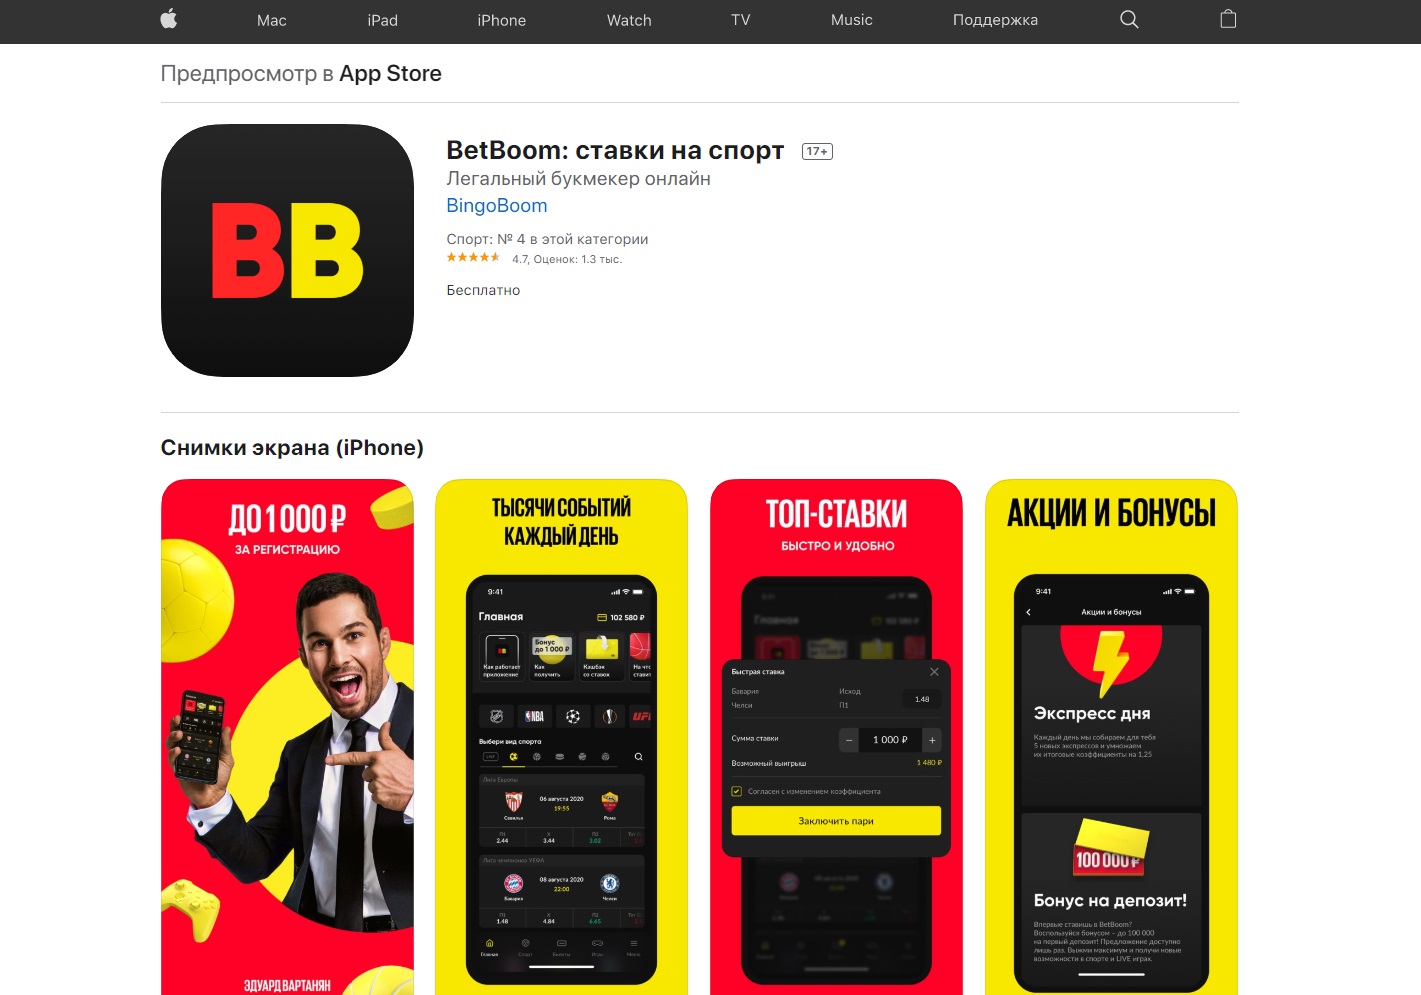 Приложение букмекера Бет Бум для iPhone (iOS) в App Store